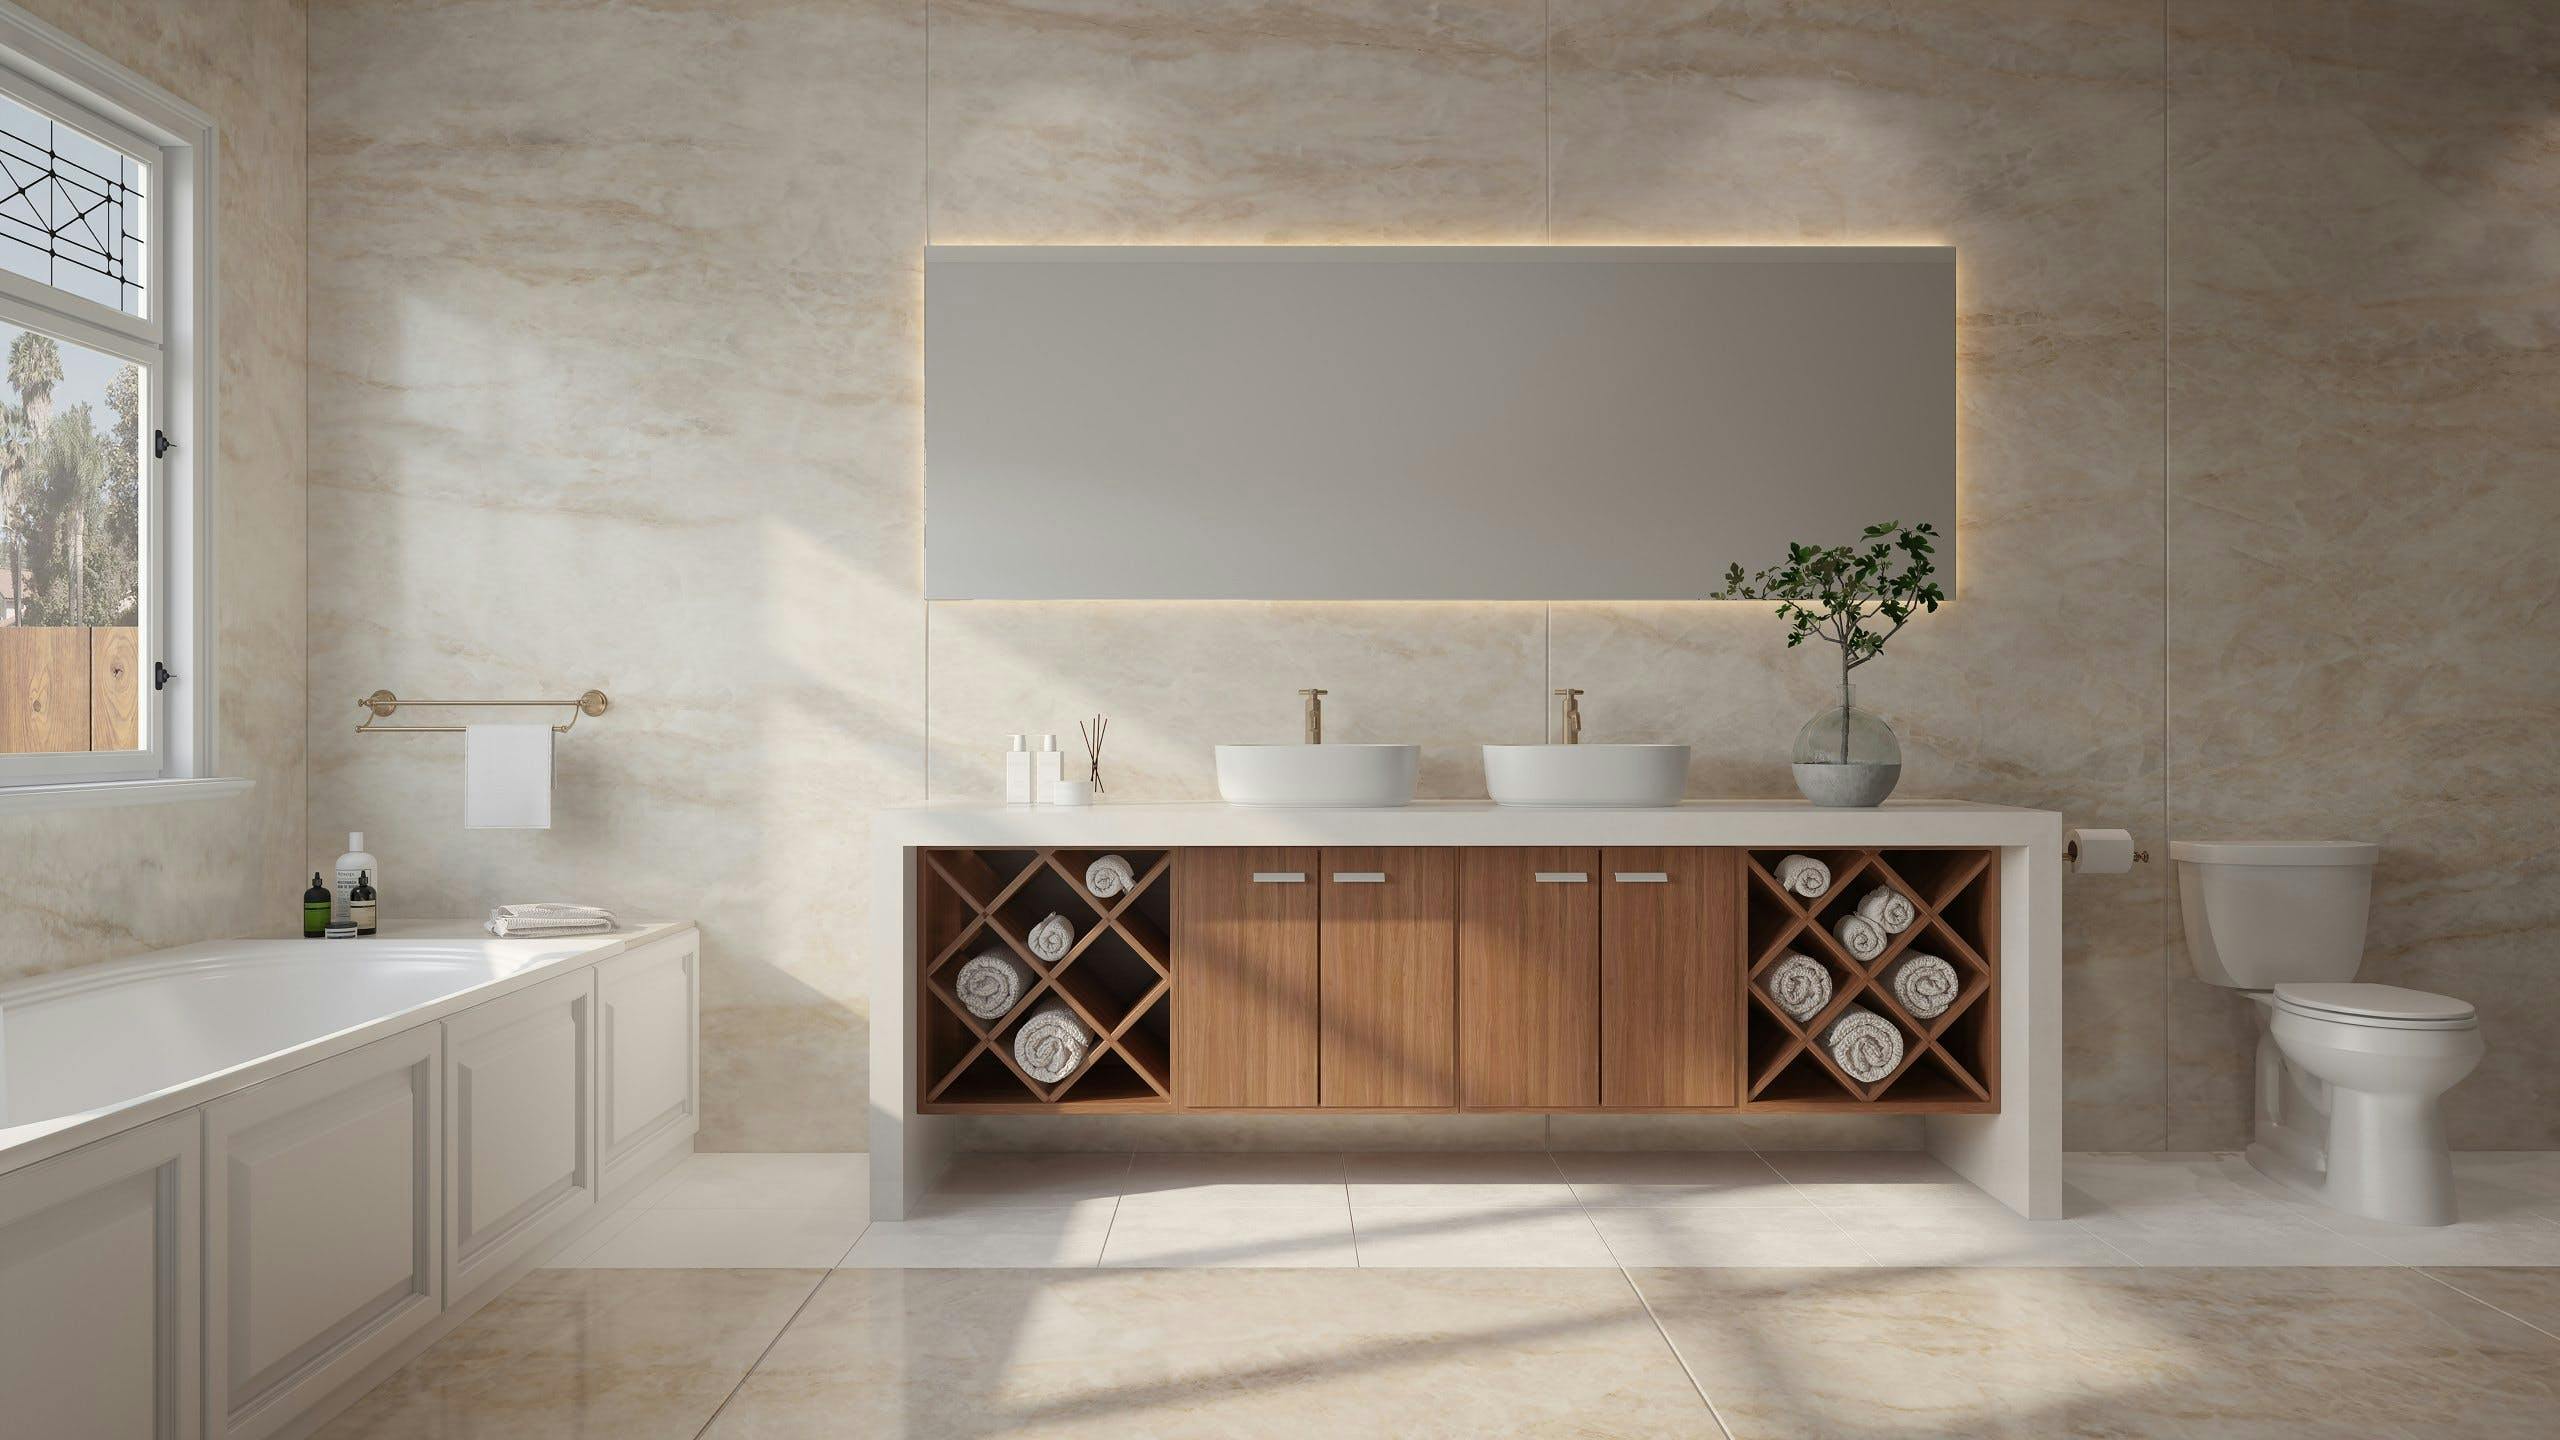 Image 35 of Dekton bathroom Xgloss Stonika Arga 1 Flooring ZENITH baja 2 in Dekton® unveils Stonika - Cosentino